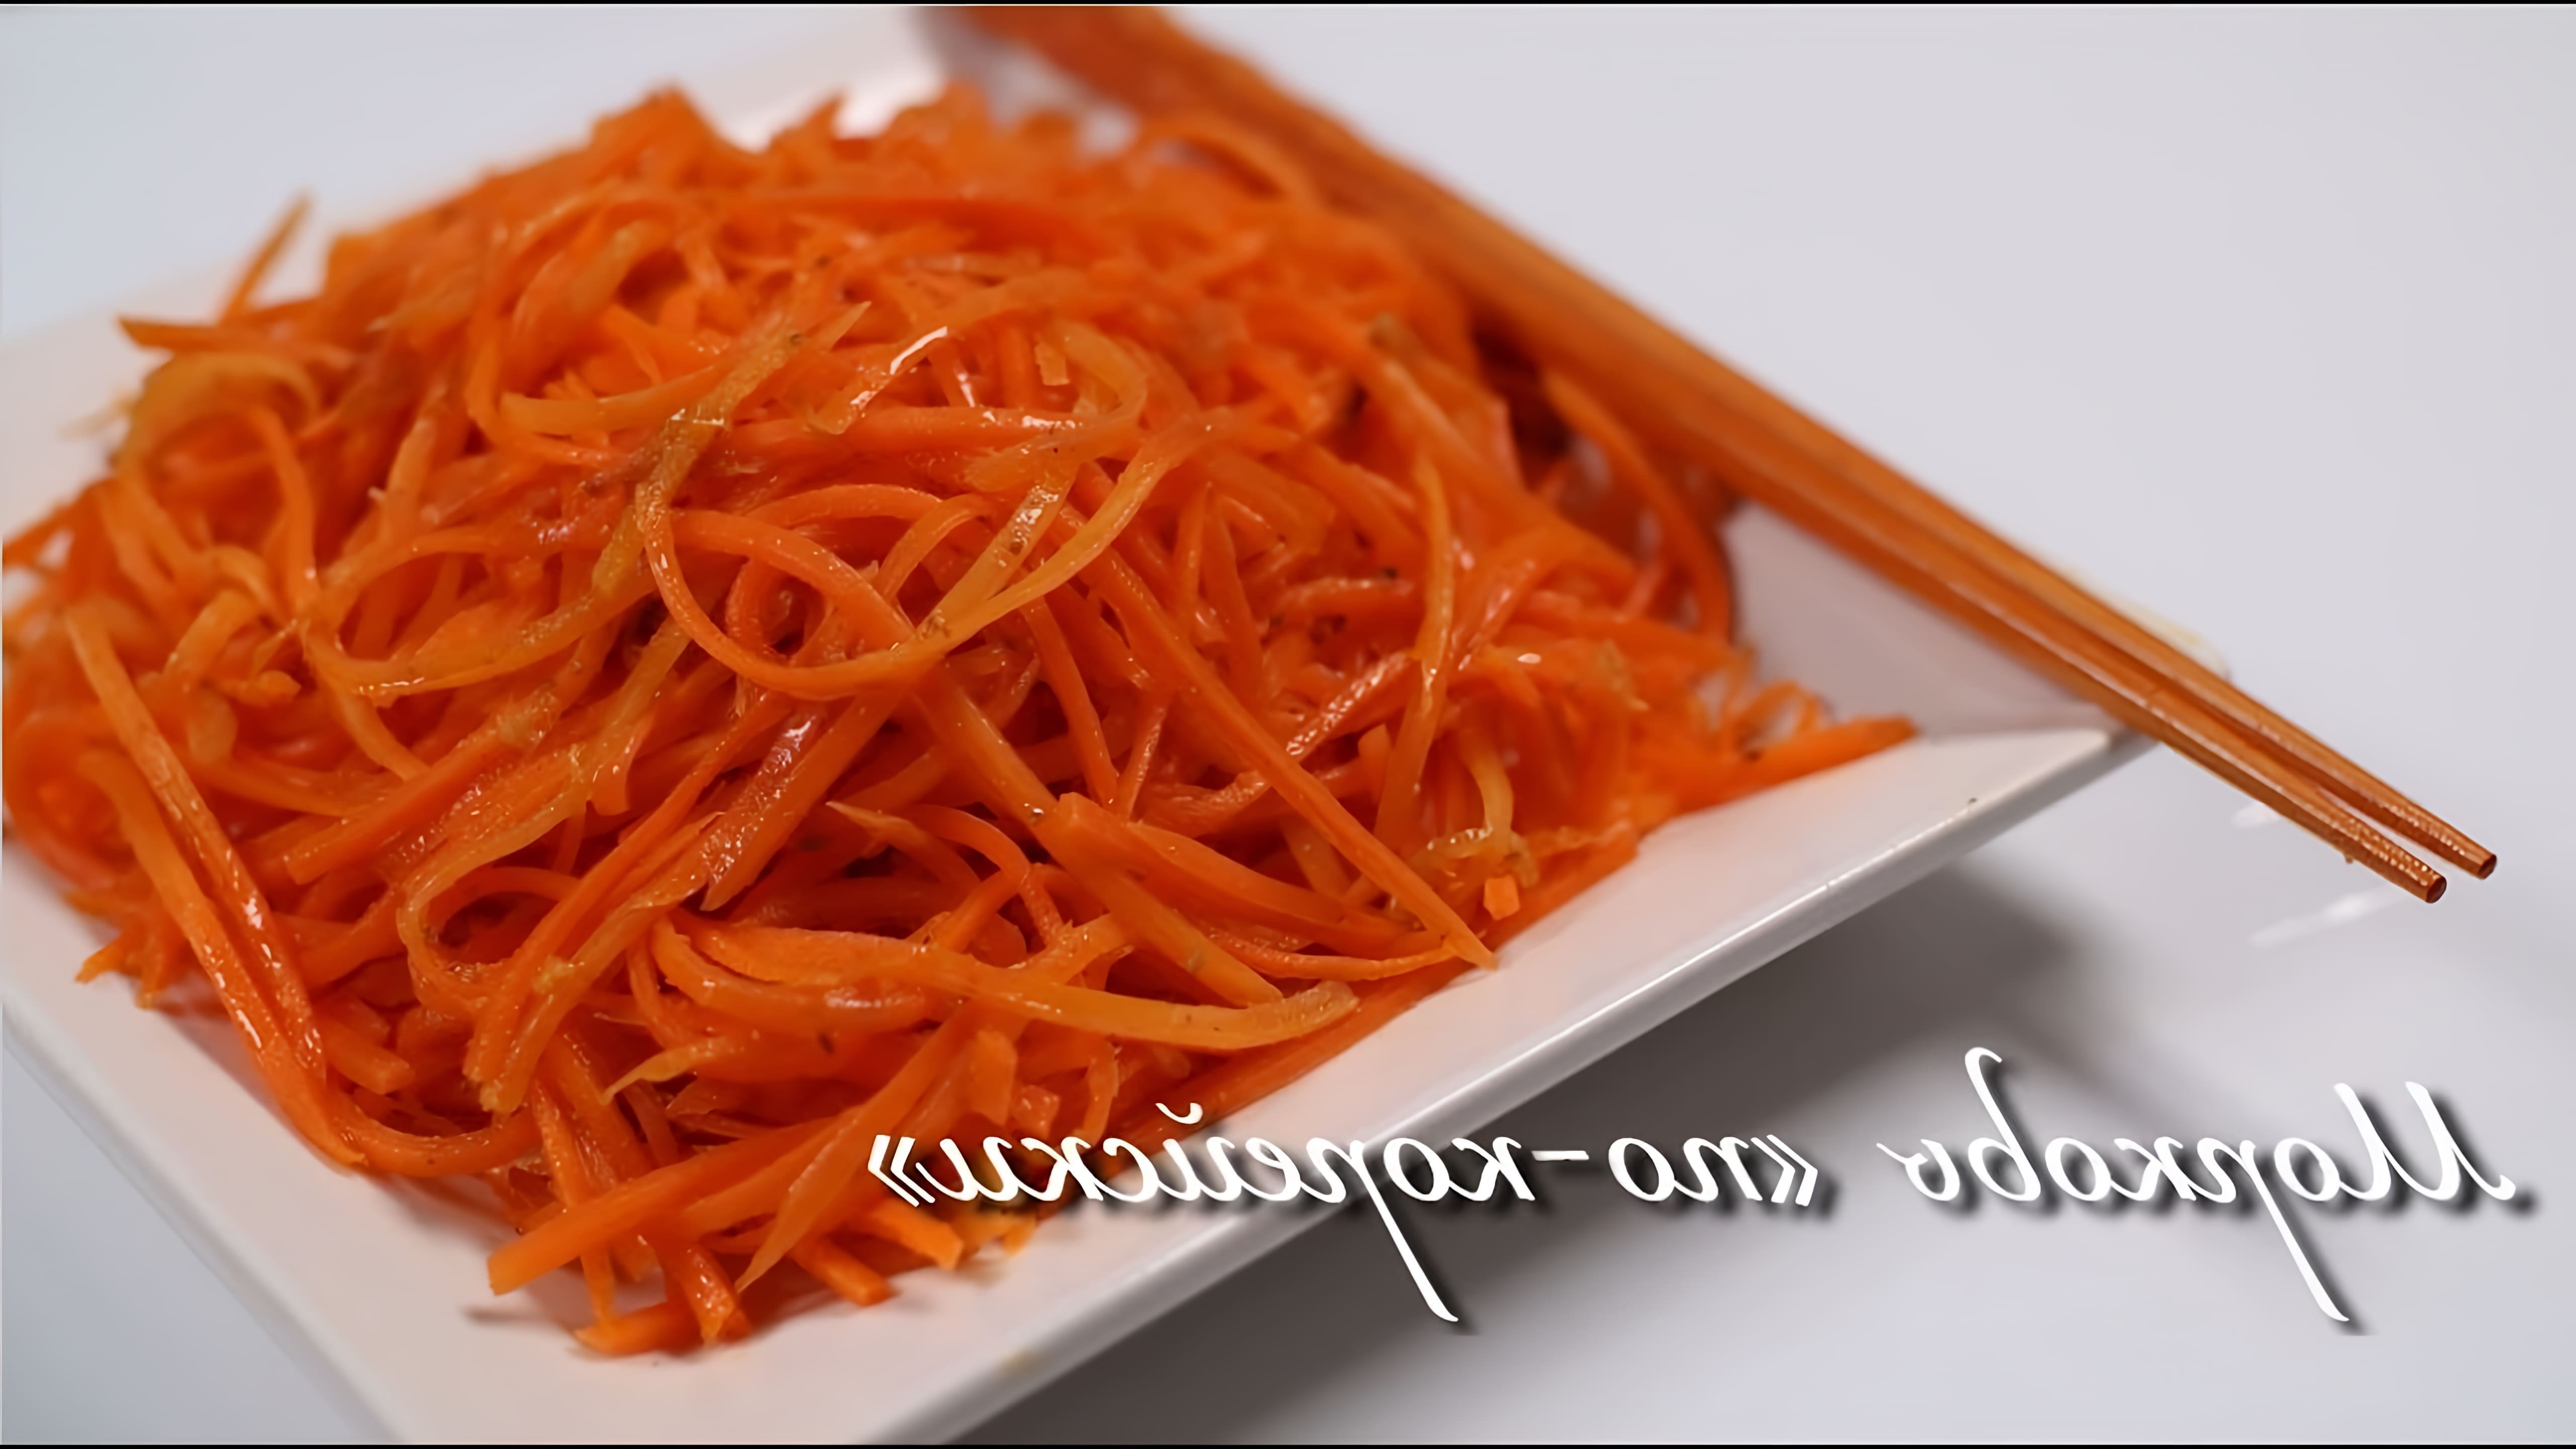 В этом видео-ролике будет представлен рецепт приготовления моркови по-корейски, который является одним из самых популярных и вкусных блюд